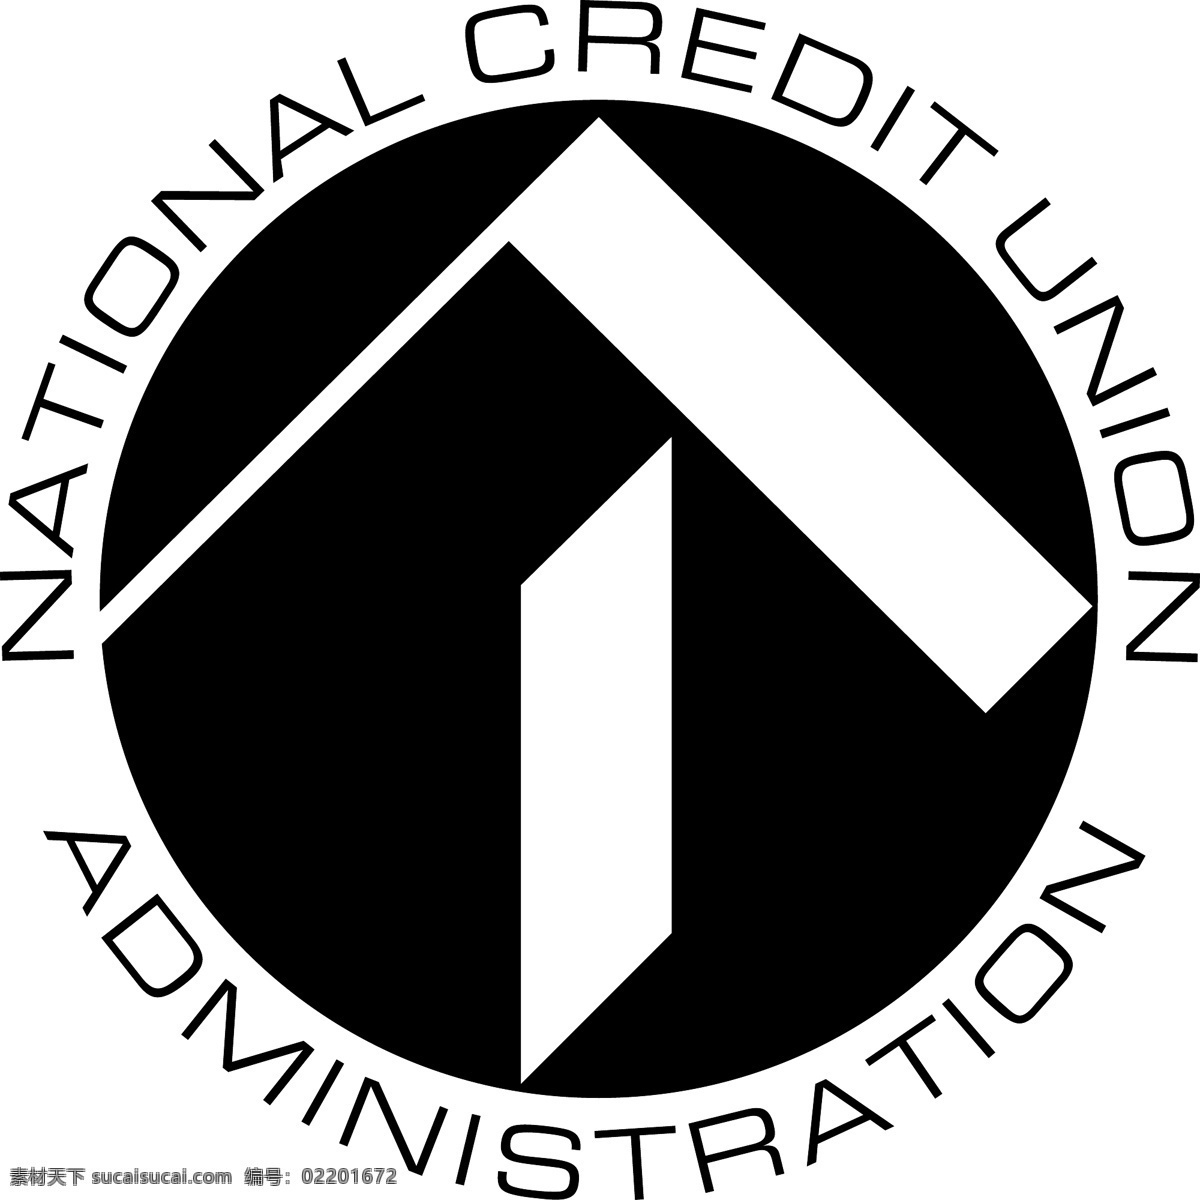 全国 信贷 联盟 标志 标志设计 工会 国家 信用 国家信用 信用联盟 联盟的标志 标识 向量 信用合作社 标识向量 免费 矢量 国际联盟 办公室